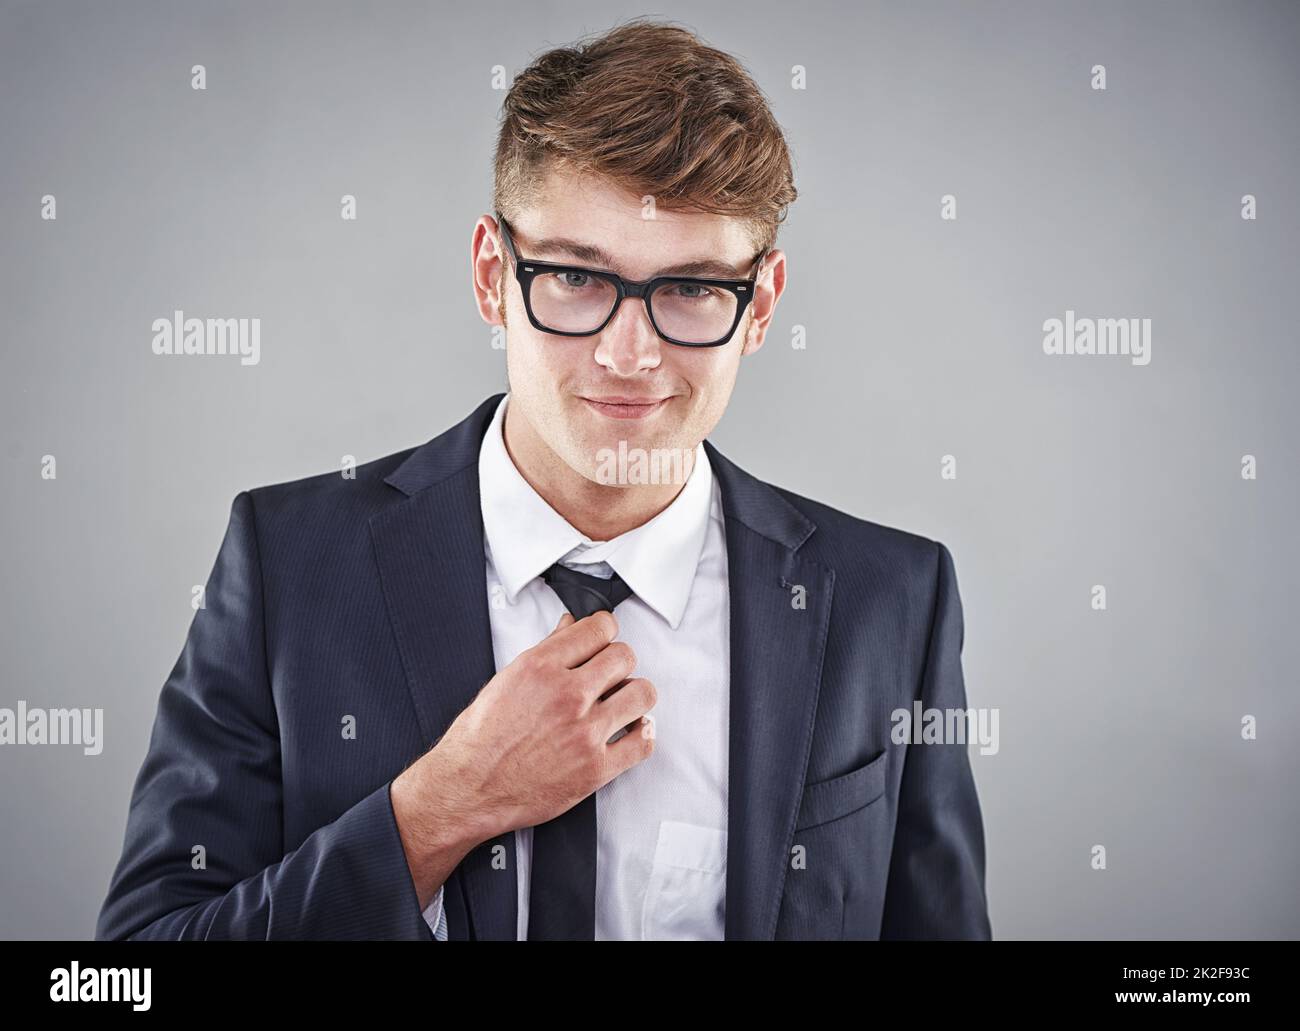 Er sieht stylisch und smart aus. Studioaufnahme eines jungen Mannes in einem Anzug. Stockfoto